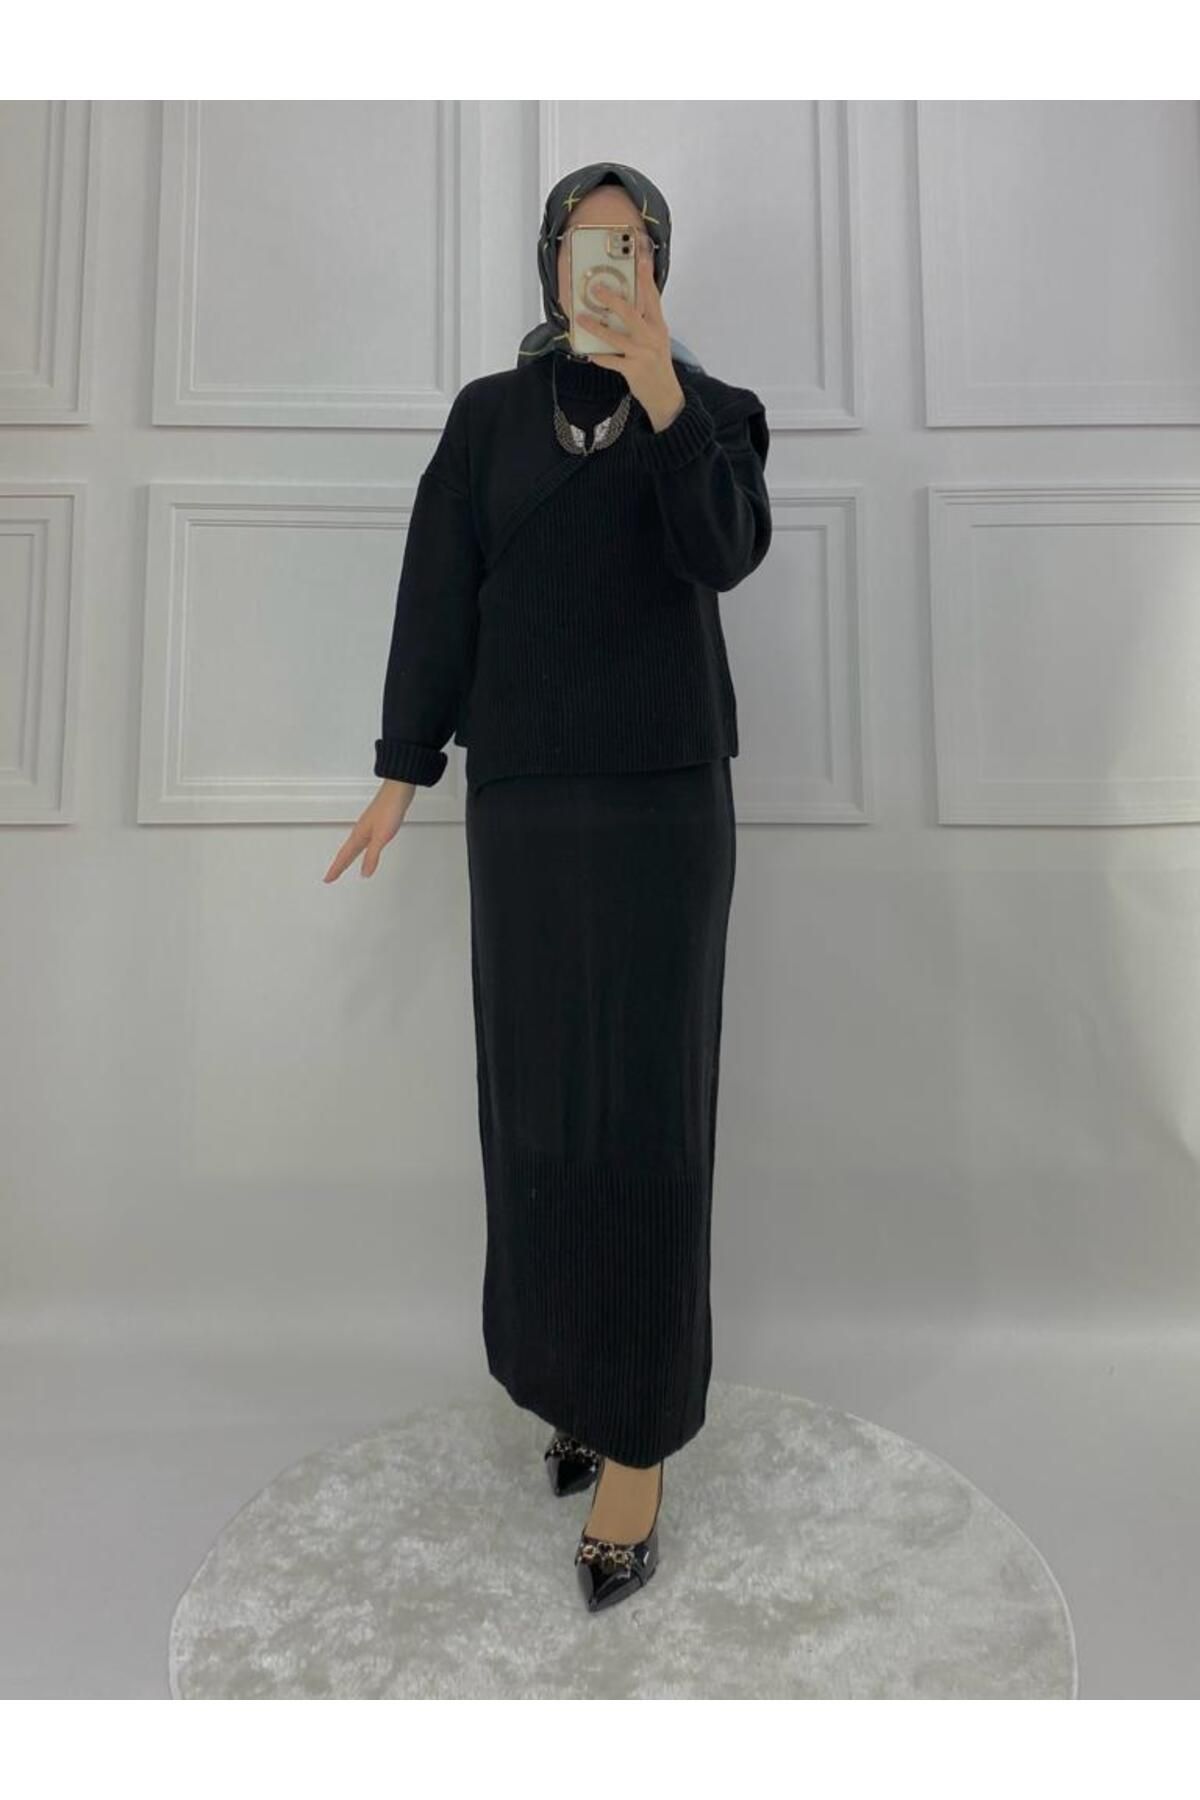 PIRLANTA GİYİM Kadın Siyah Triko Süveterli Elbise - 298